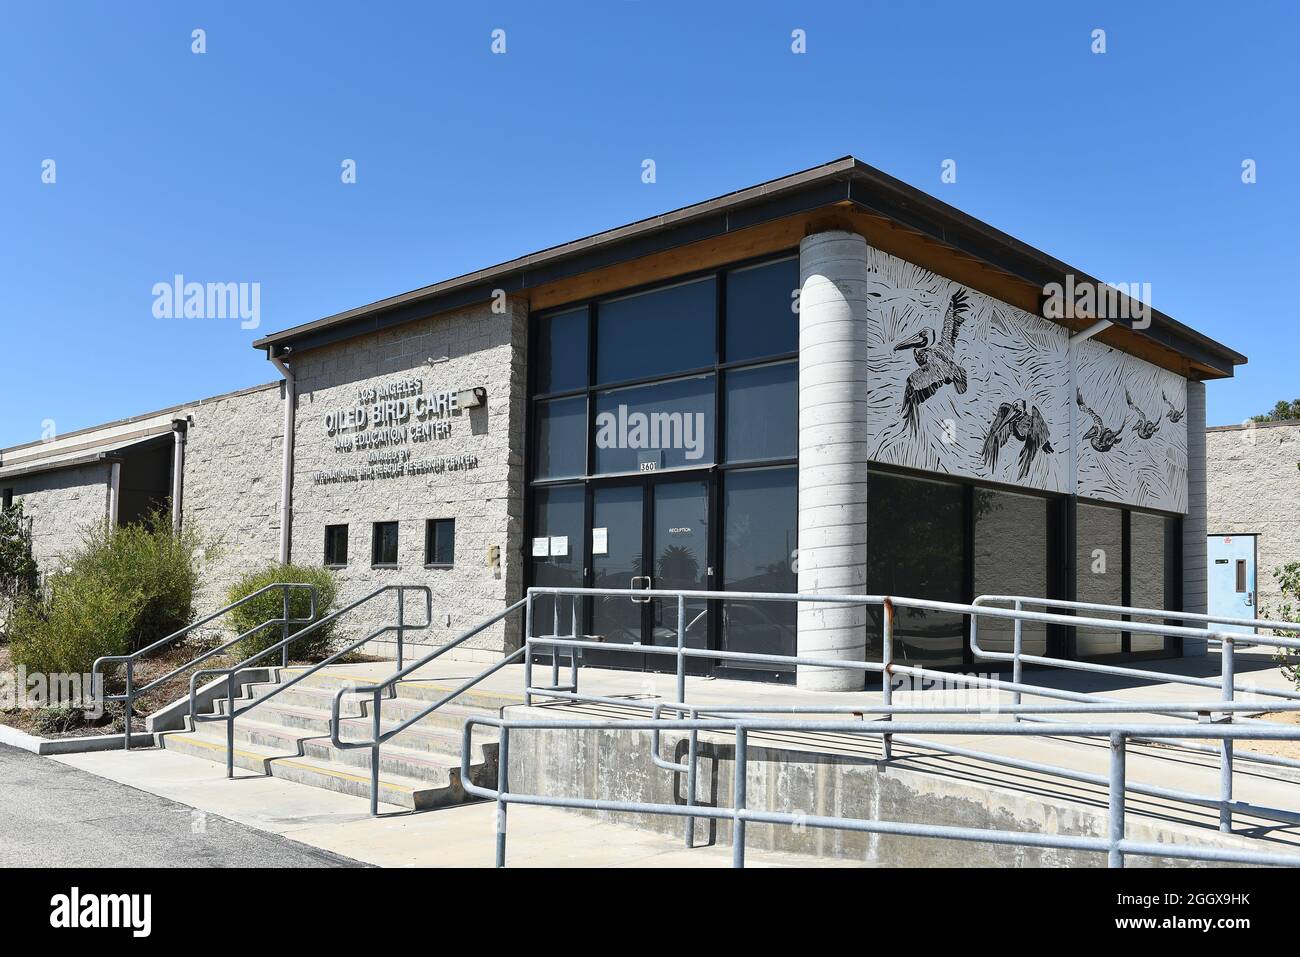 SAN PEDRO, KALIFORNIEN - 27 AUG 2021: Los Angeles Oiled Bird Care and Education Center, behandelt Seevögel, Watvögel und Wasservögel, die vom Öl spi betroffen sind Stockfoto